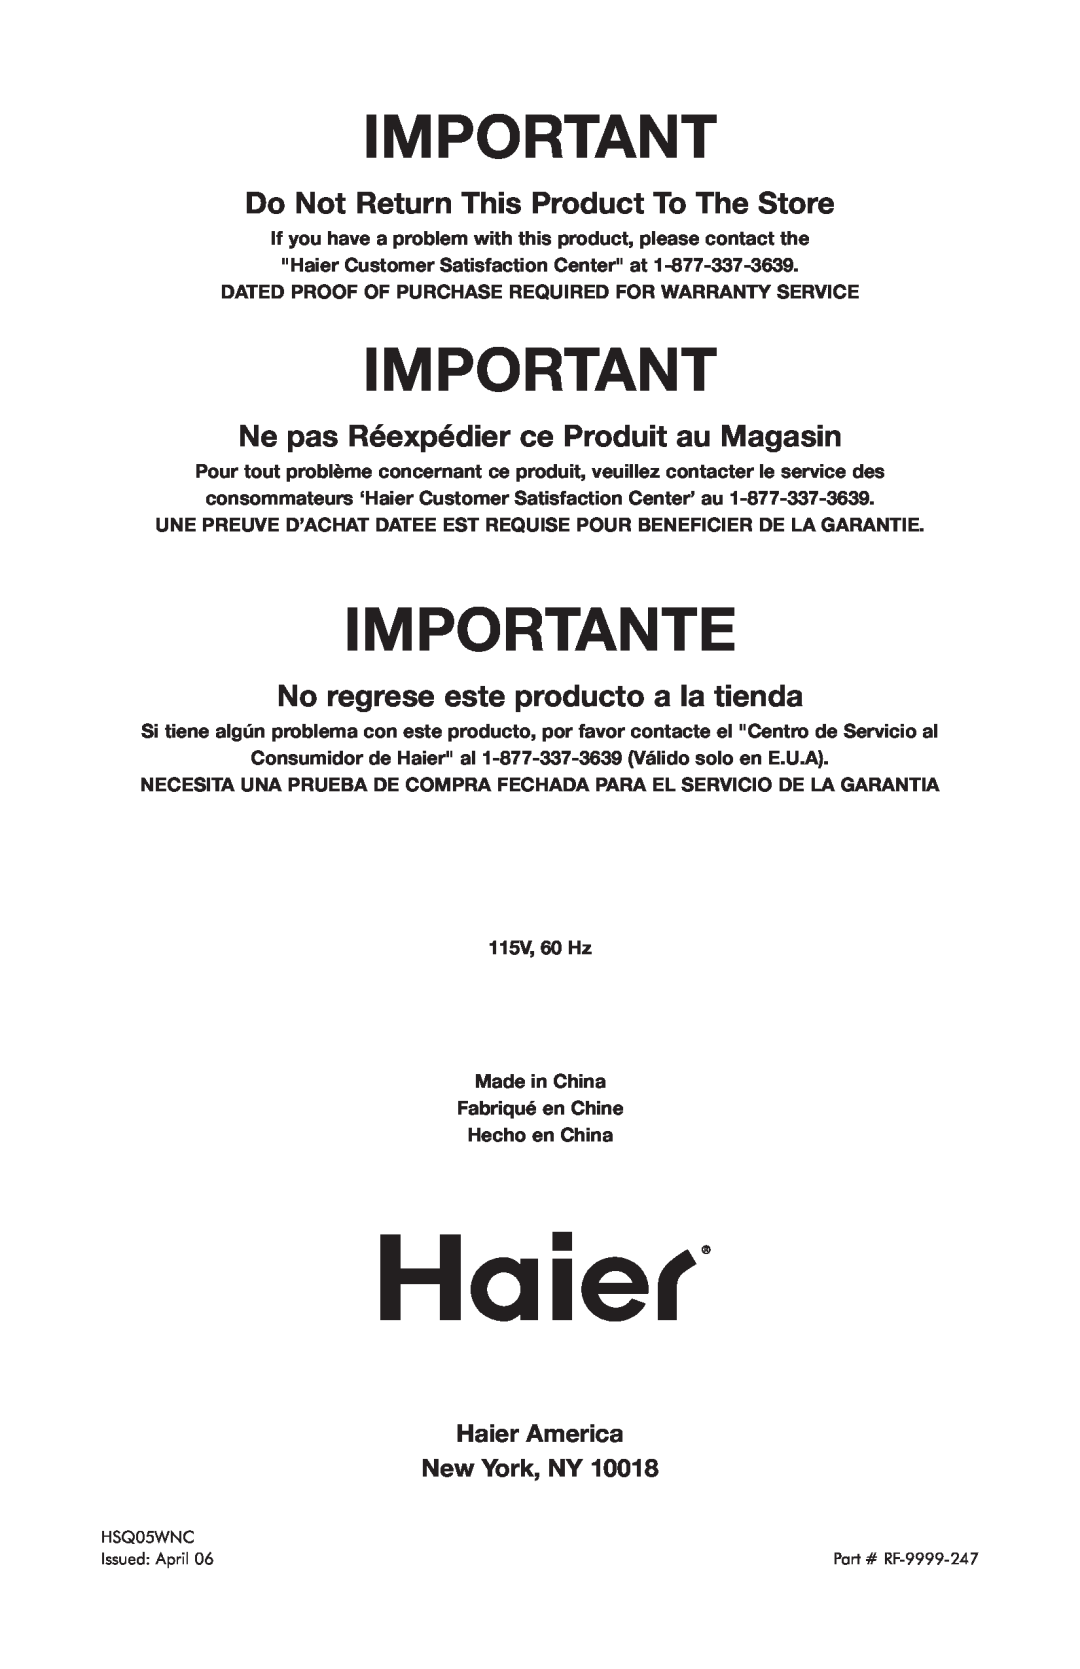 Haier HSQ05WNC user manual Importante, Do Not Return This Product To The Store, Ne pas Réexpédier ce Produit au Magasin 